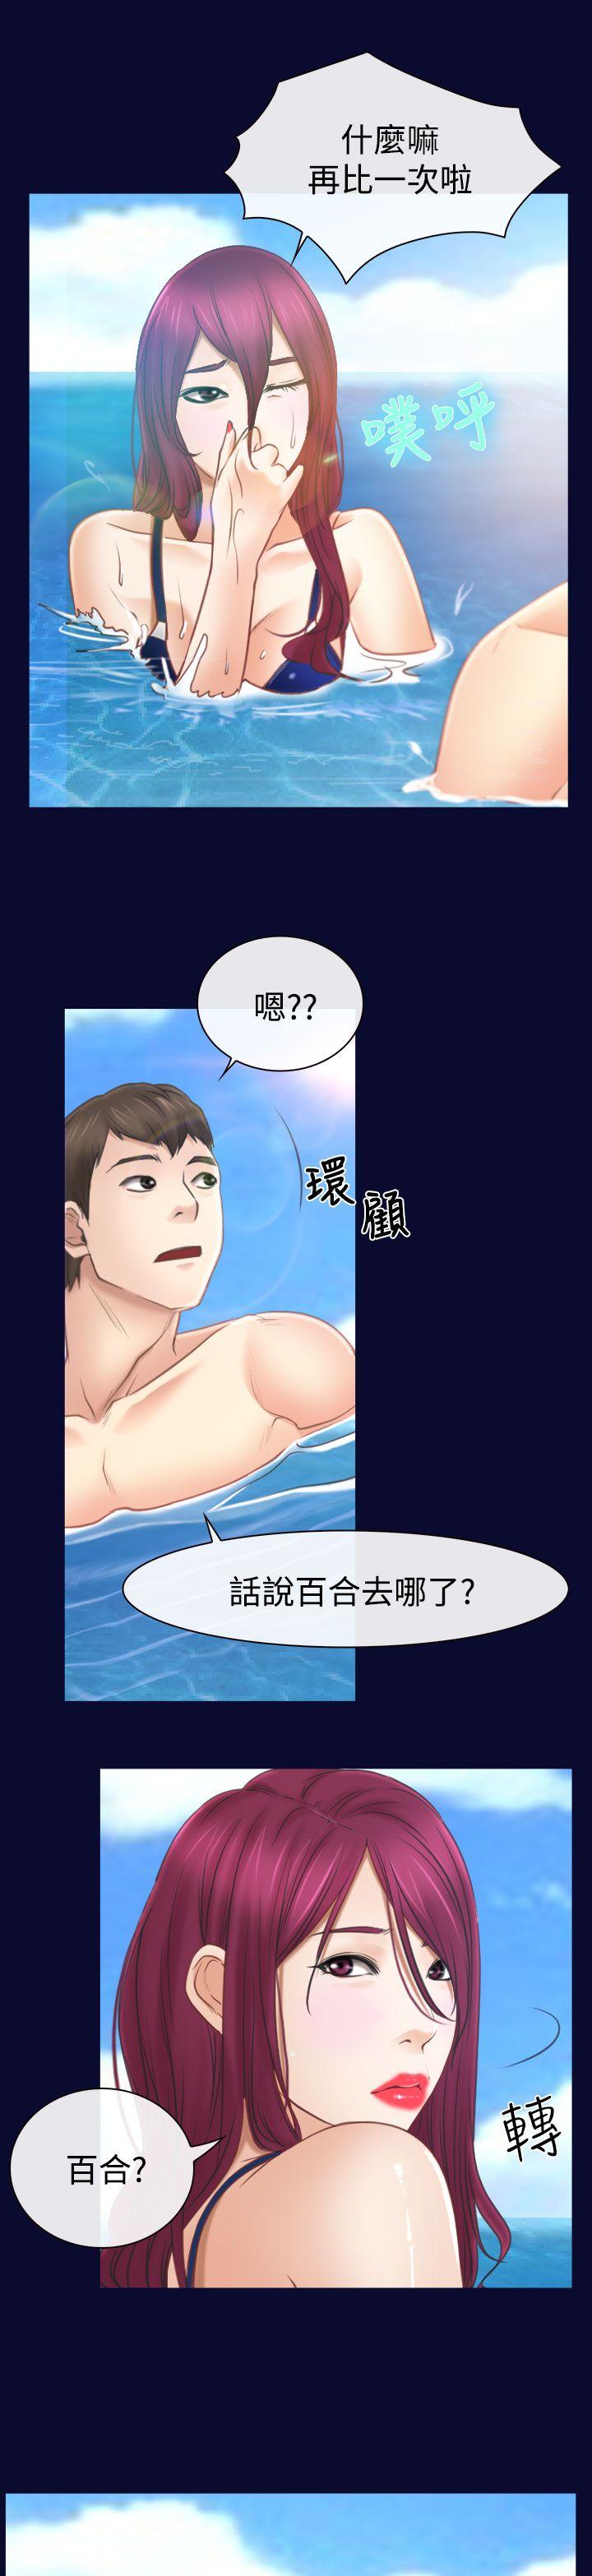 韩国污漫画 猜不透的心 第14话 17